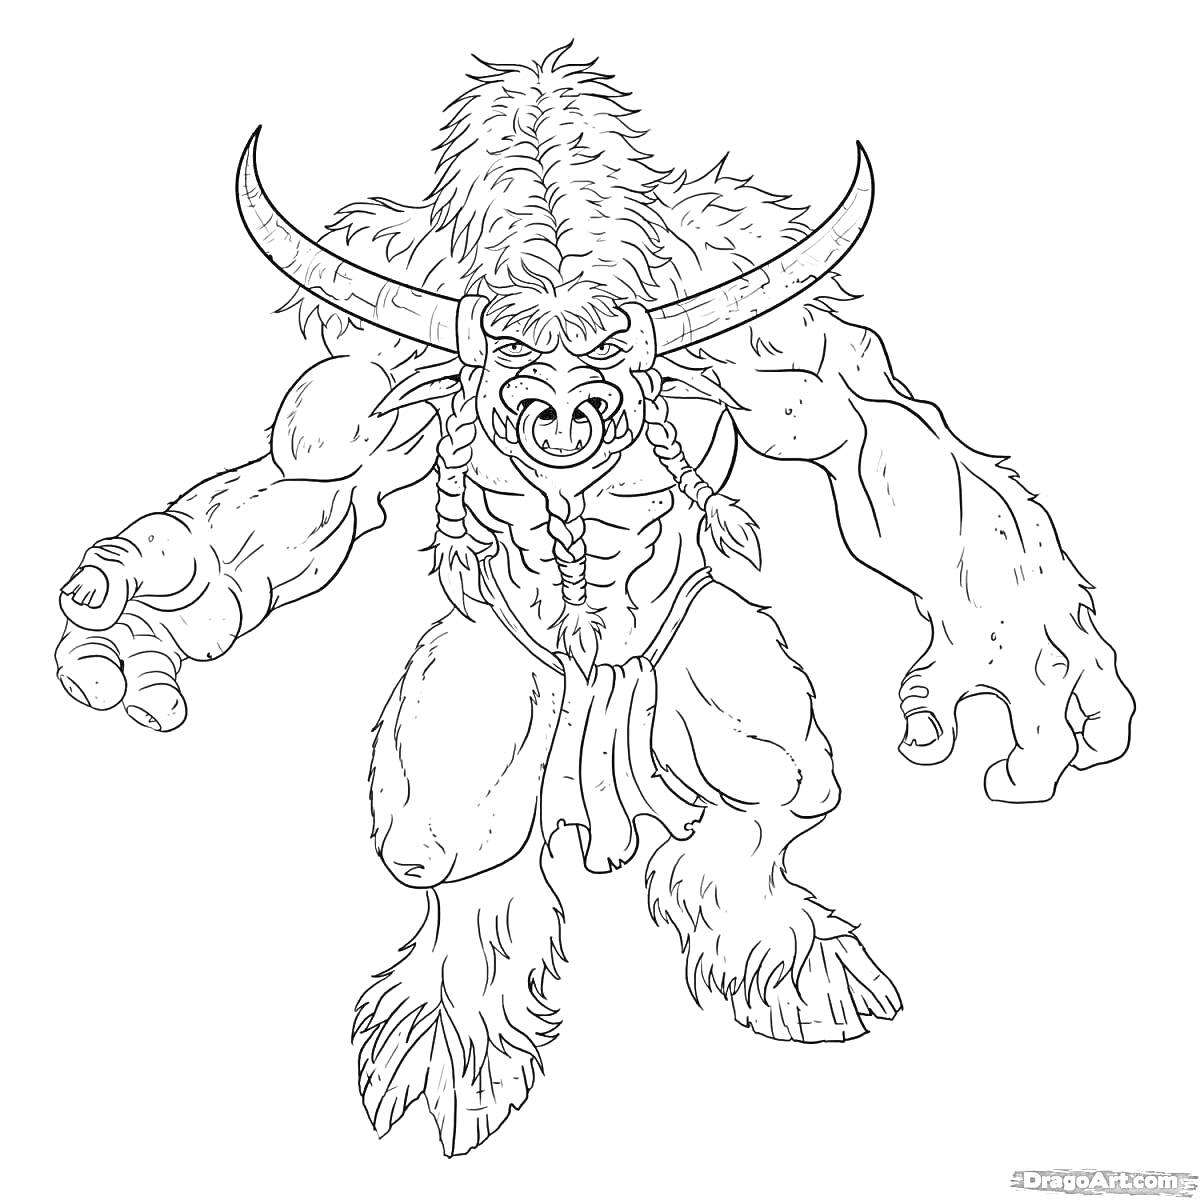 Раскраска Фантастическое существо с рогами, мышцами и мехом, в боевой позе